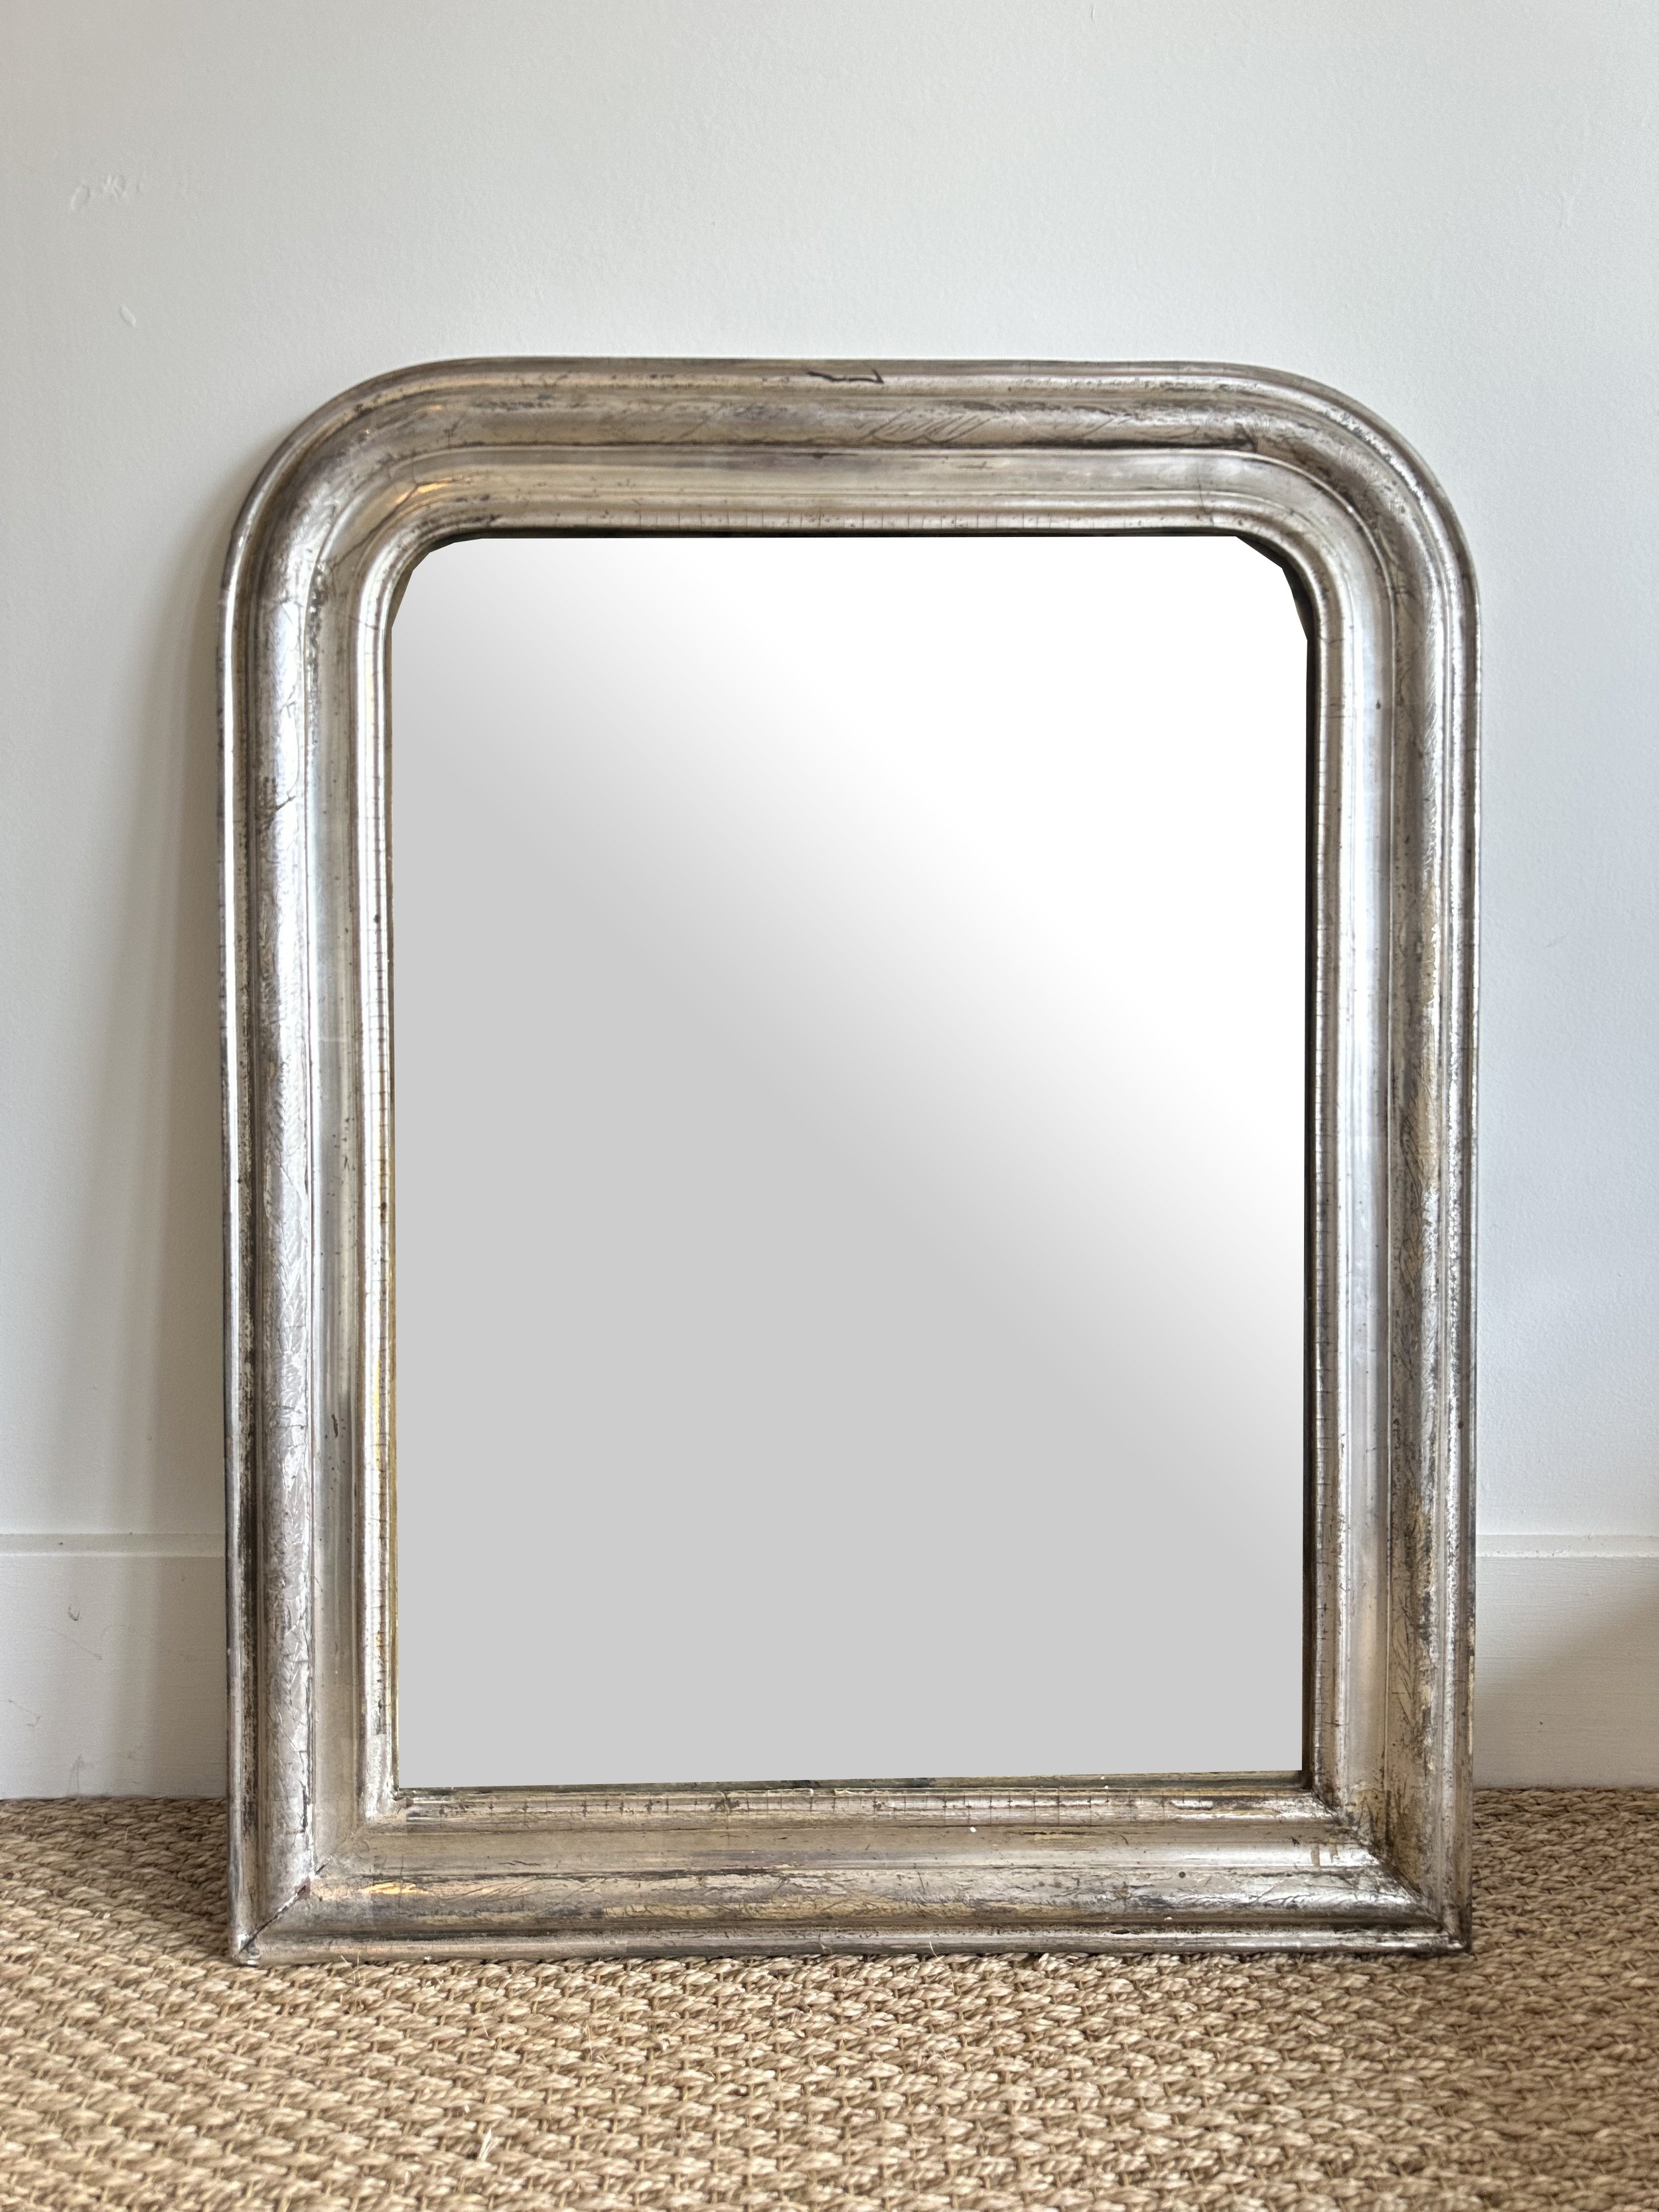 Antique Mirror - 4:15.jpg